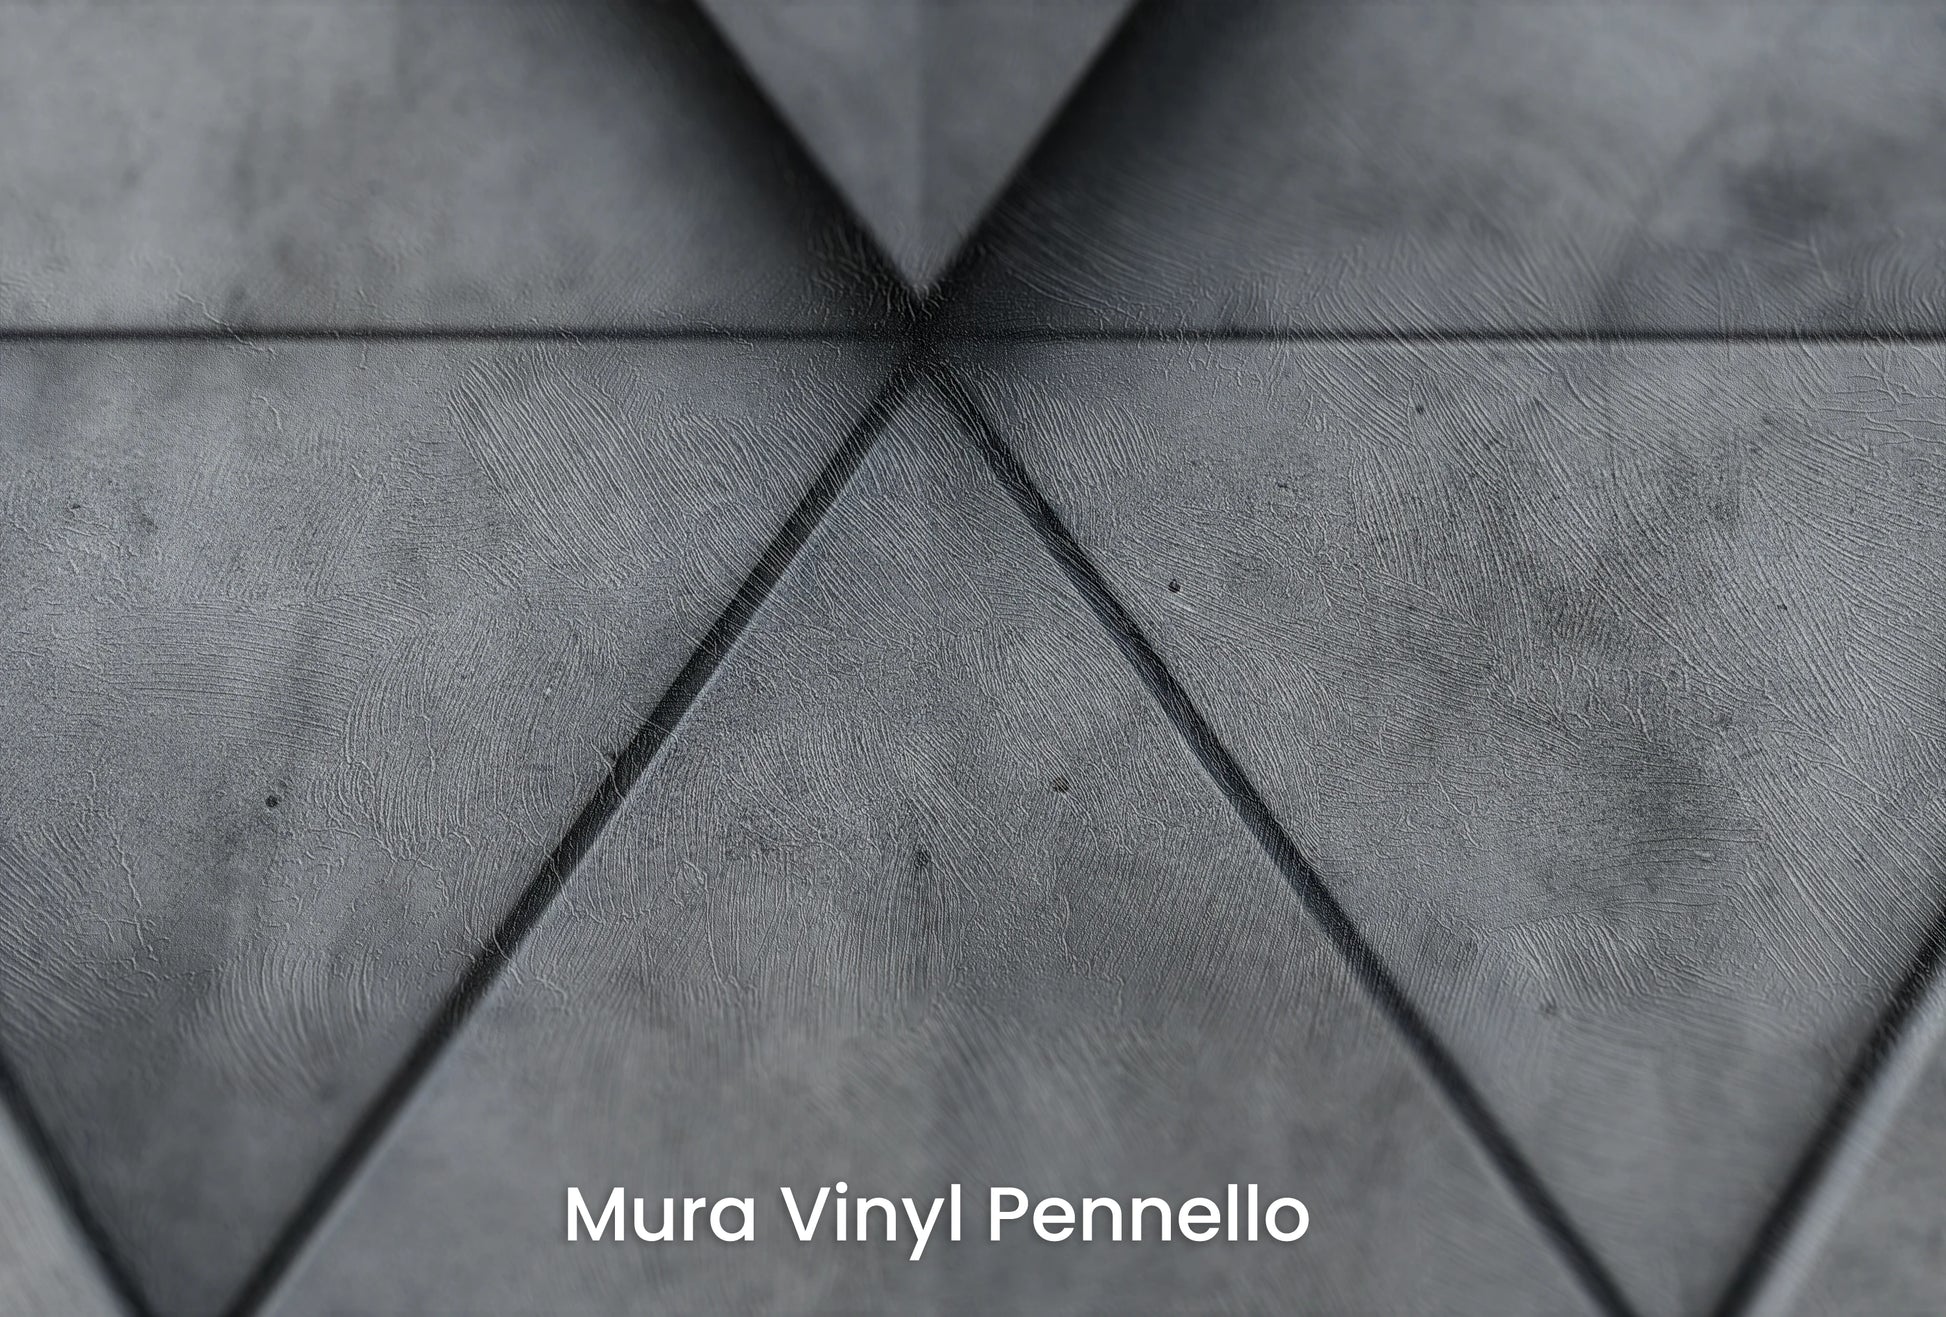 Zbliżenie na artystyczną fototapetę o nazwie Diamond Dynamics na podłożu Mura Vinyl Pennello - faktura pociągnięć pędzla malarskiego.